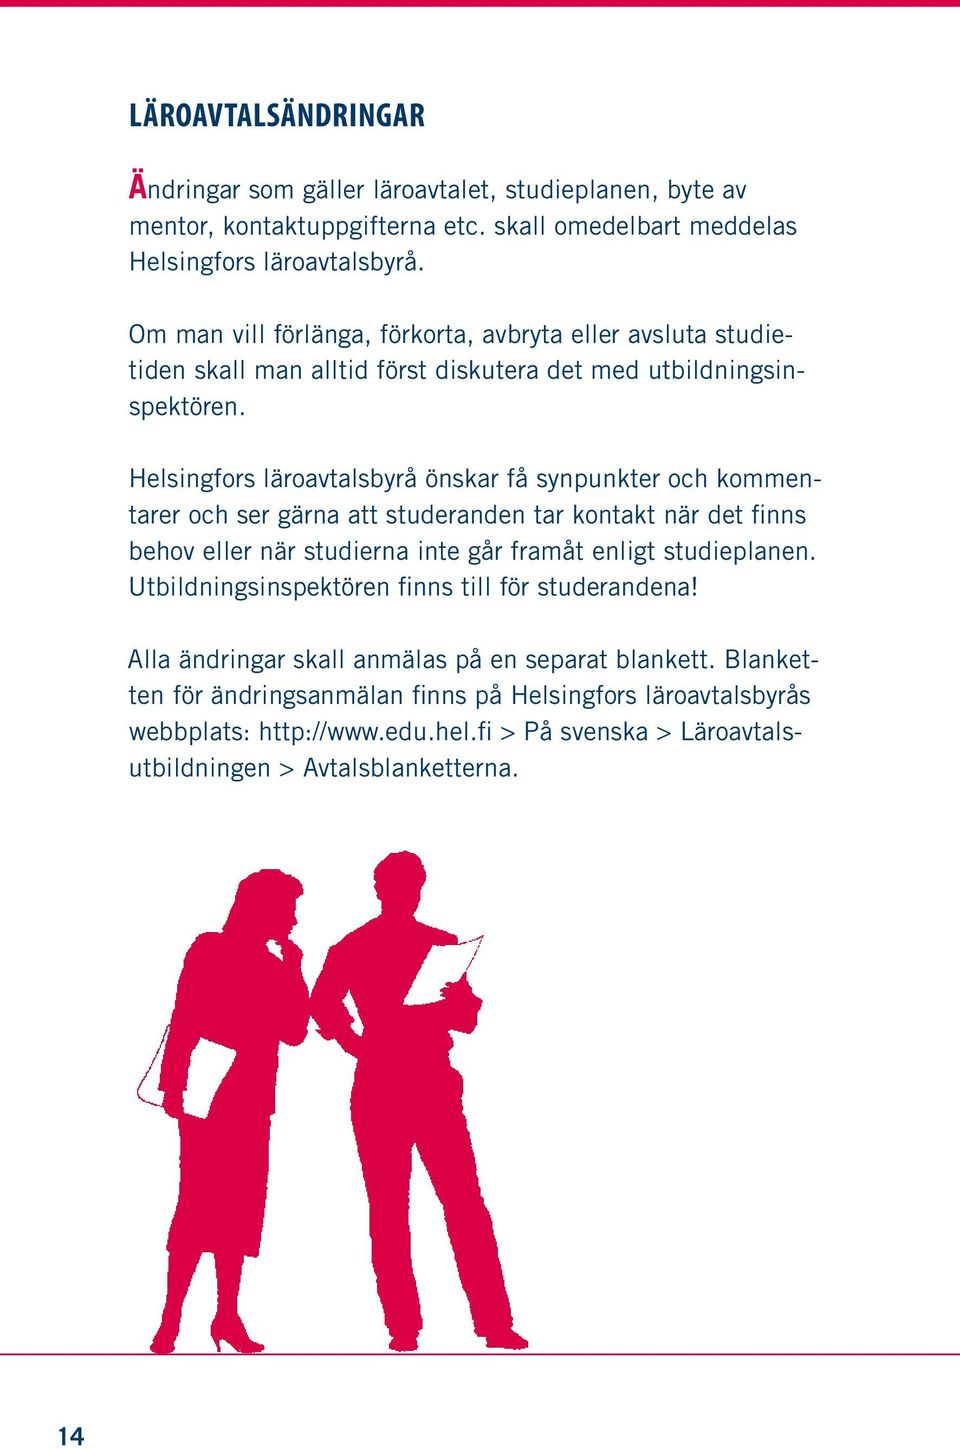 Helsingfors läroavtalsbyrå önskar få synpunkter och kommentarer och ser gärna att studeranden tar kontakt när det finns behov eller när studierna inte går framåt enligt studieplanen.